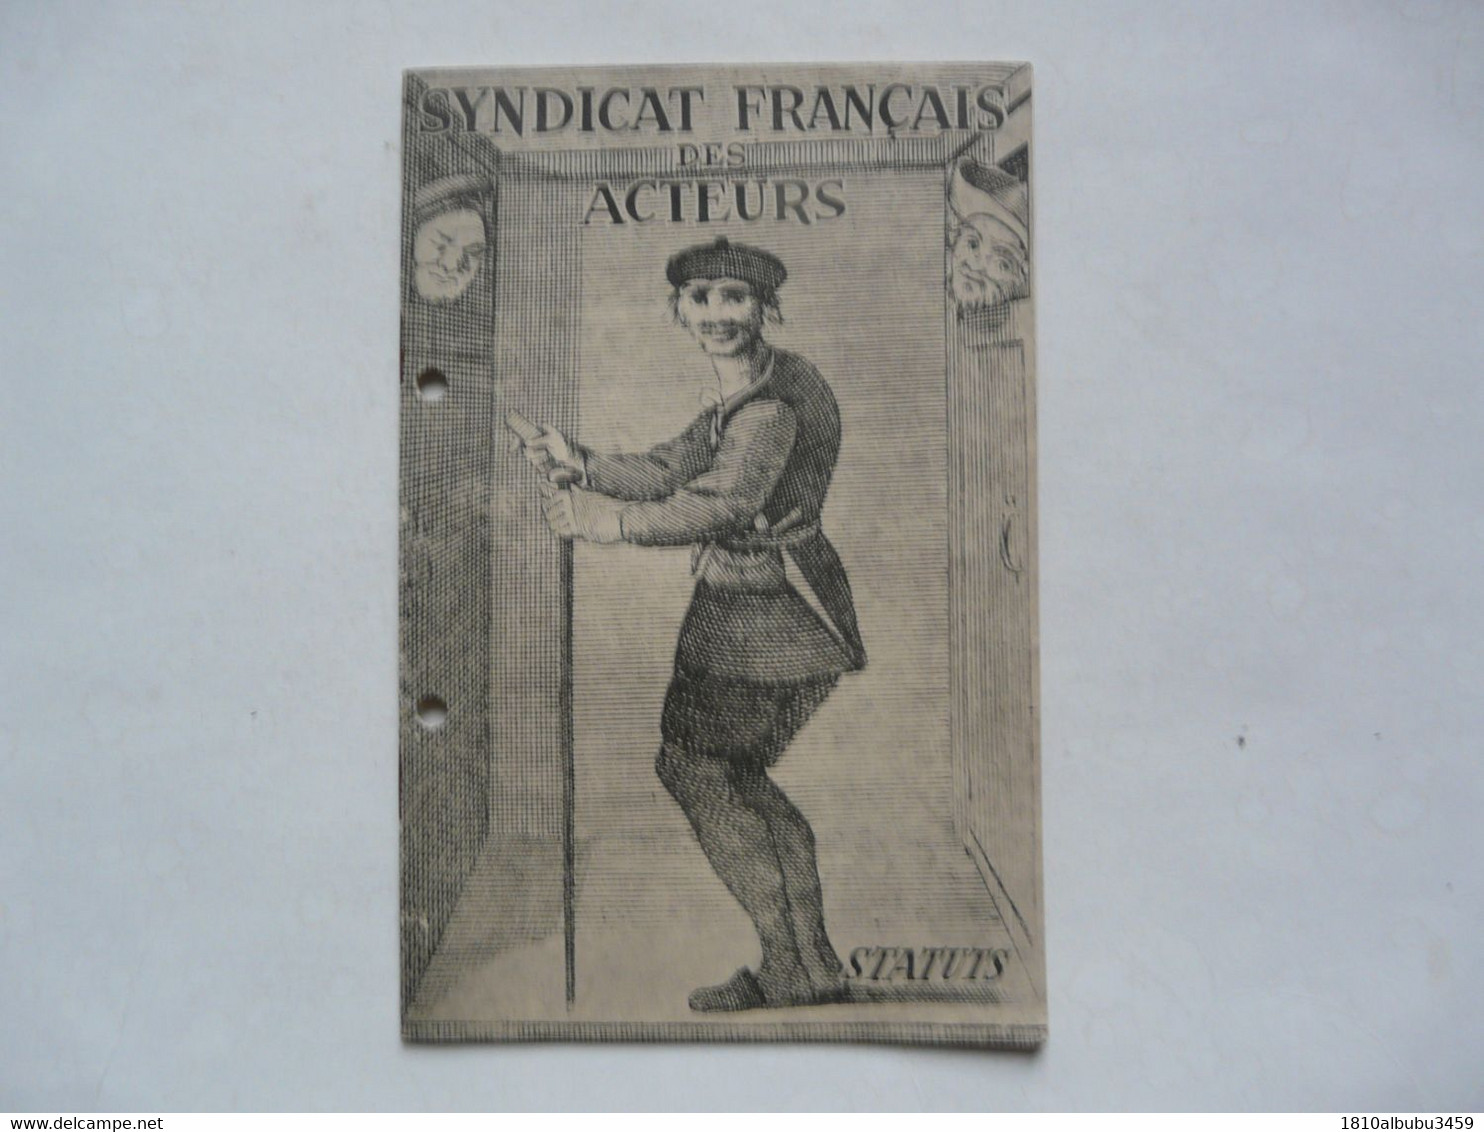 FASCICULE - SYNDICAT FRANCAIS DES ACTEURS : Statuts - Audio-video